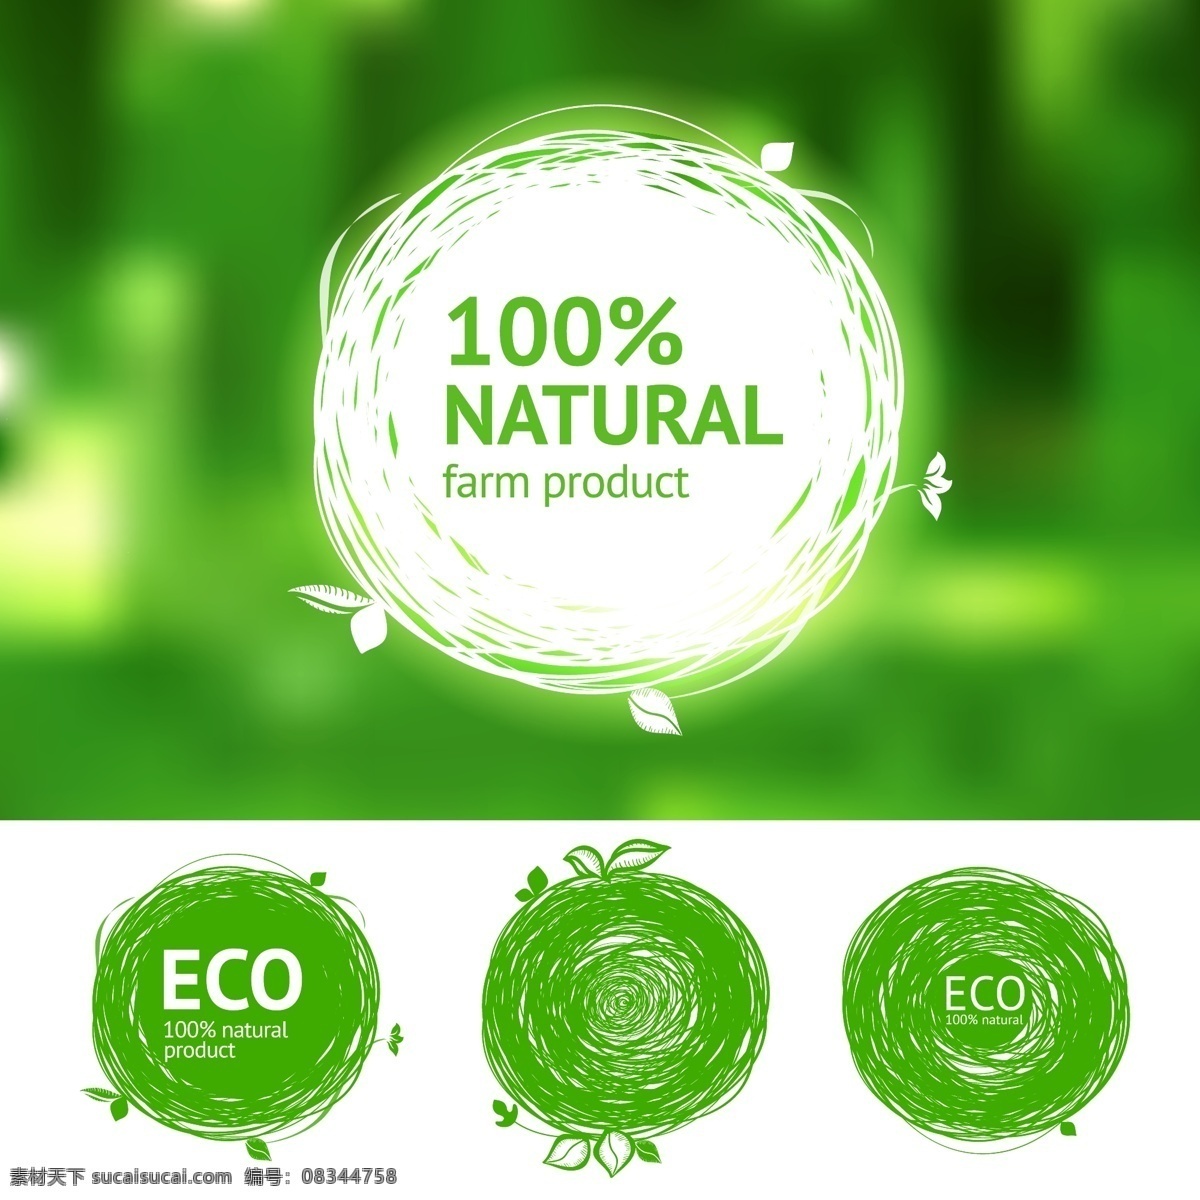 纯天然 绿色 环境保护 矢量 手绘 圆形 矢量素材